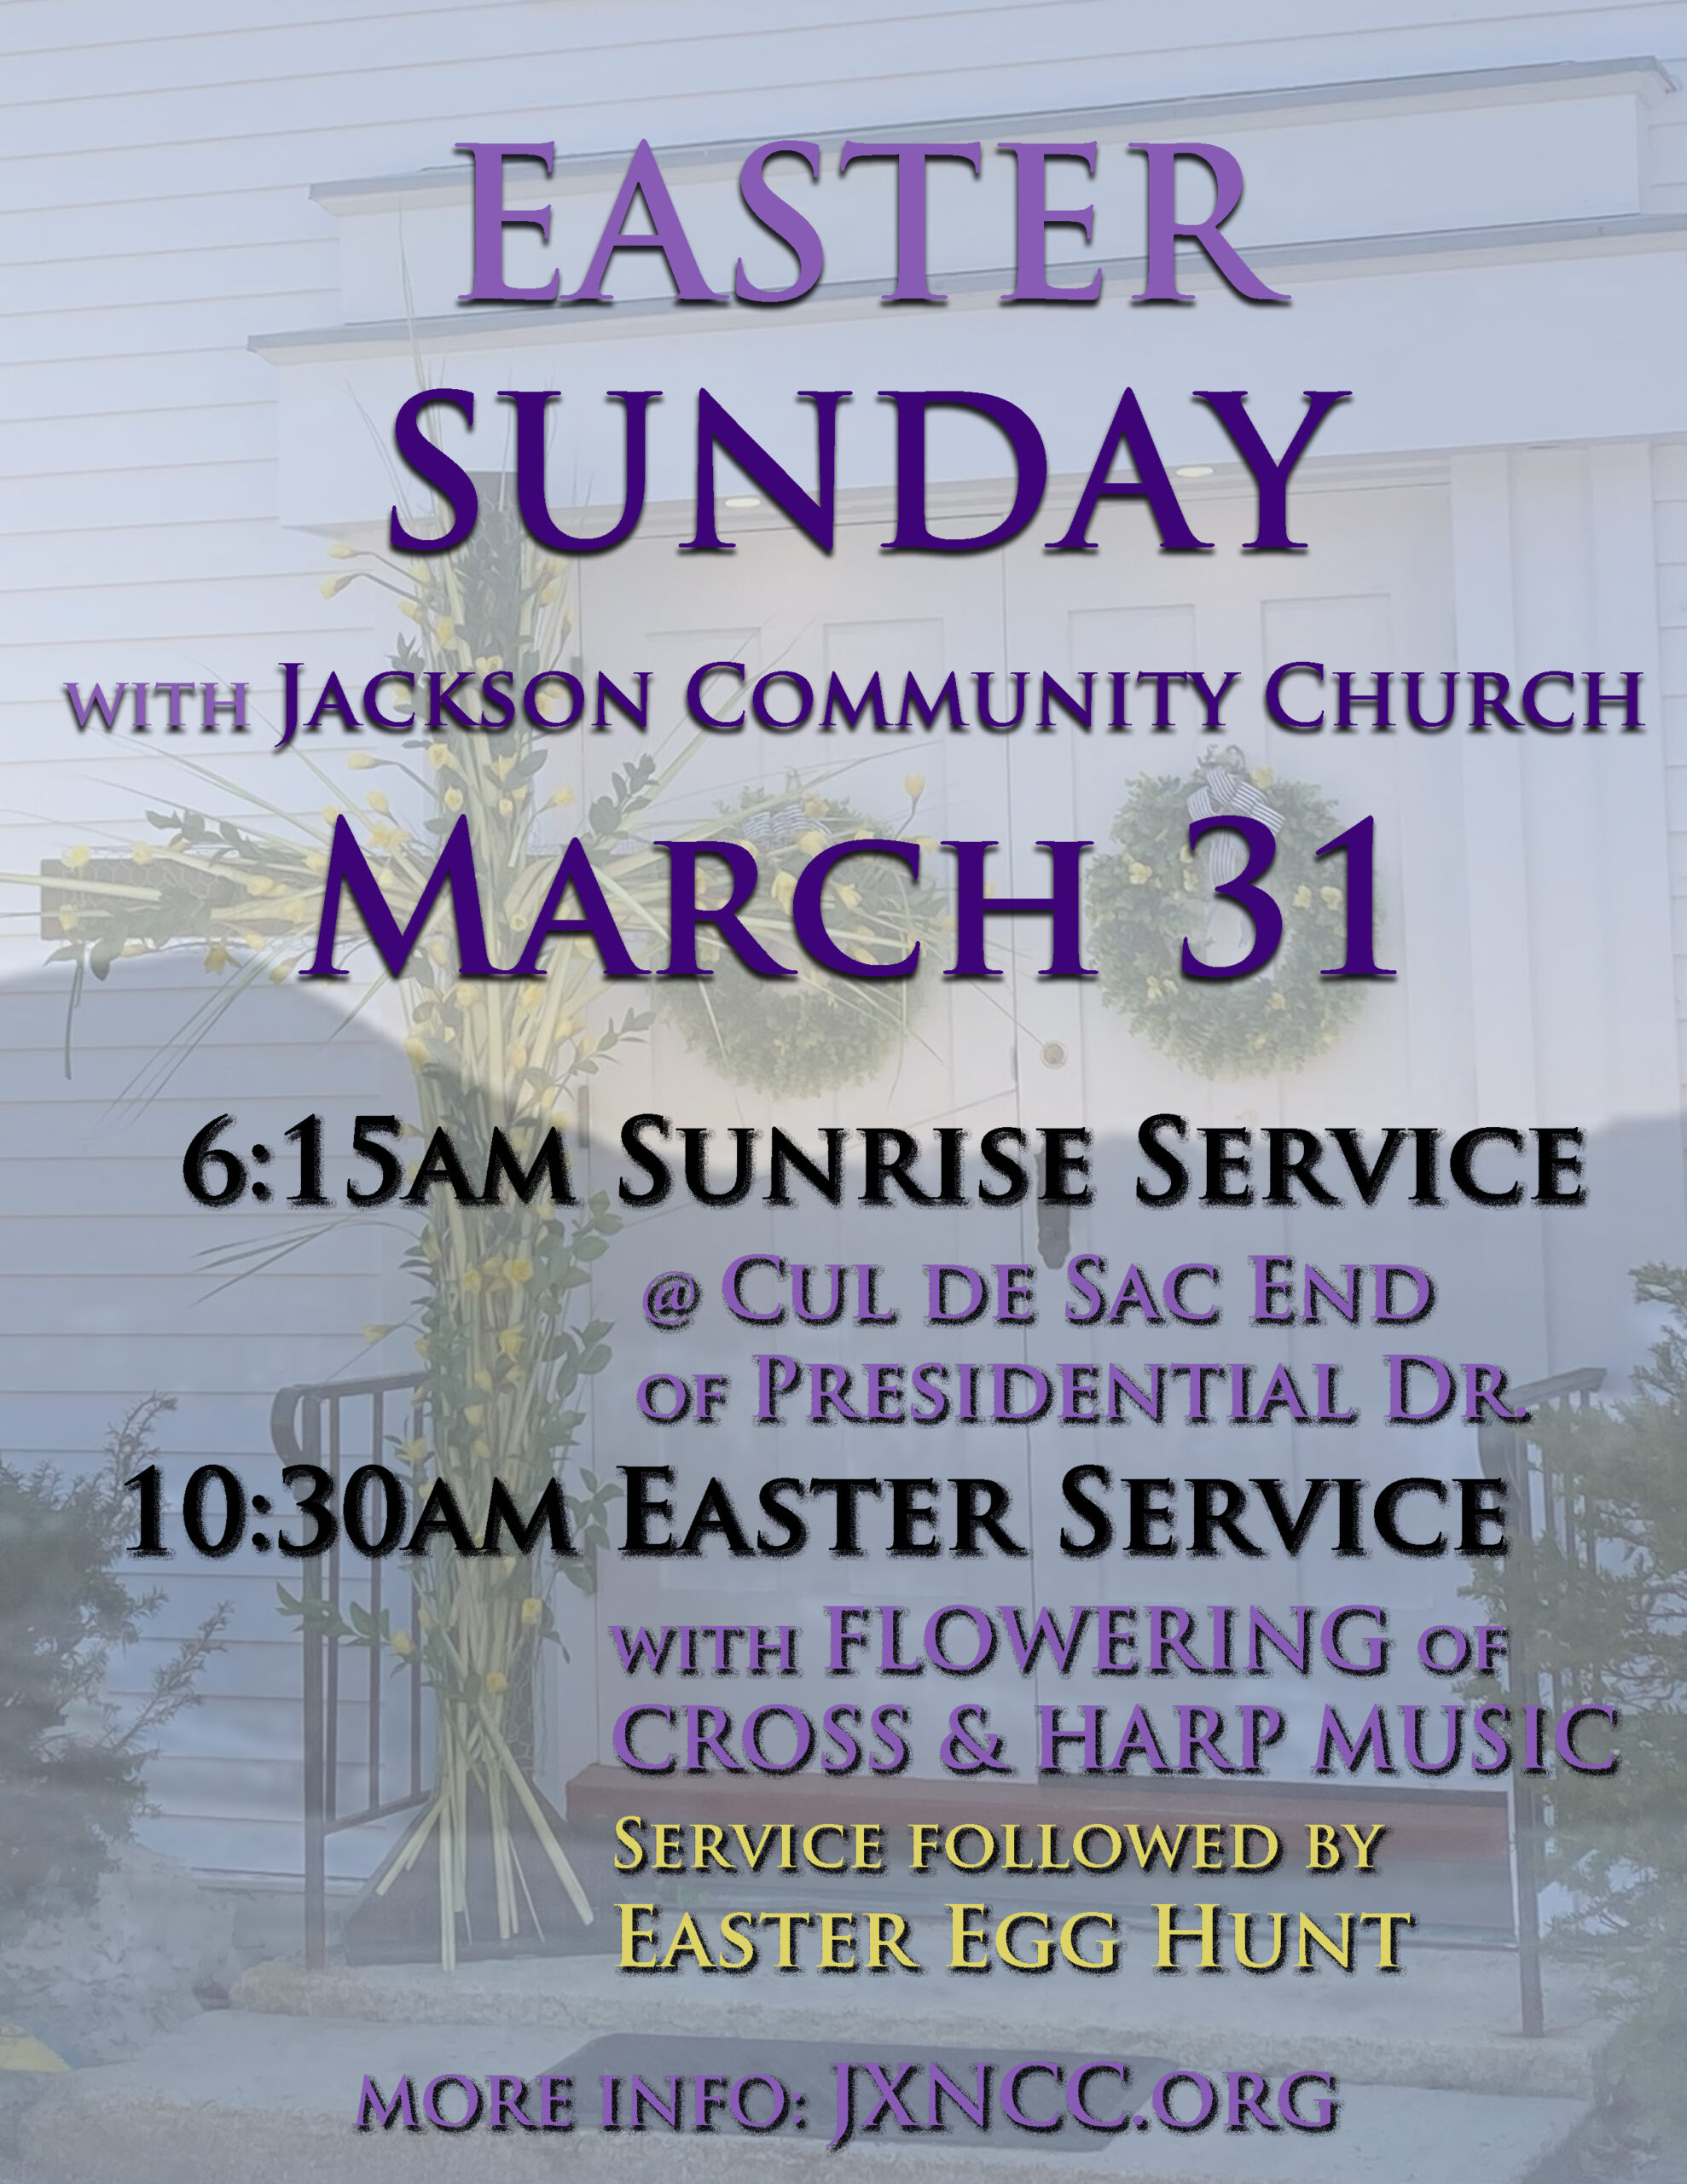 Easter Sunday at JCC (plus neighboring Bartlett options)